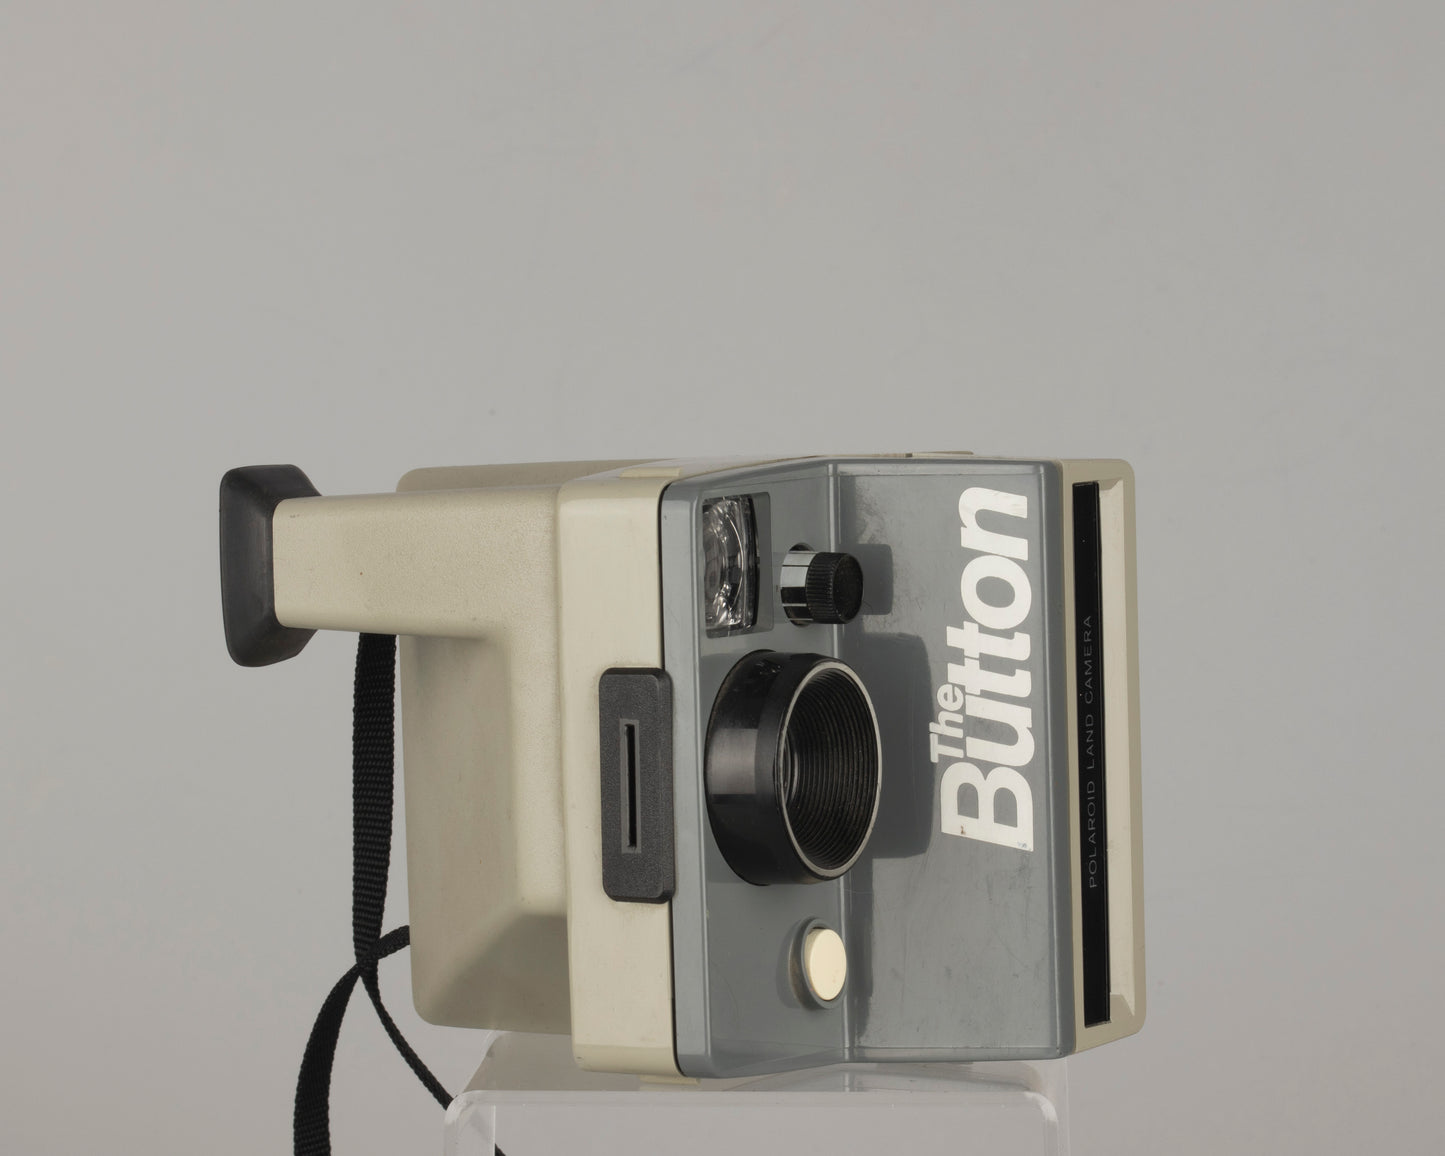 Polaroid The Button instant camera